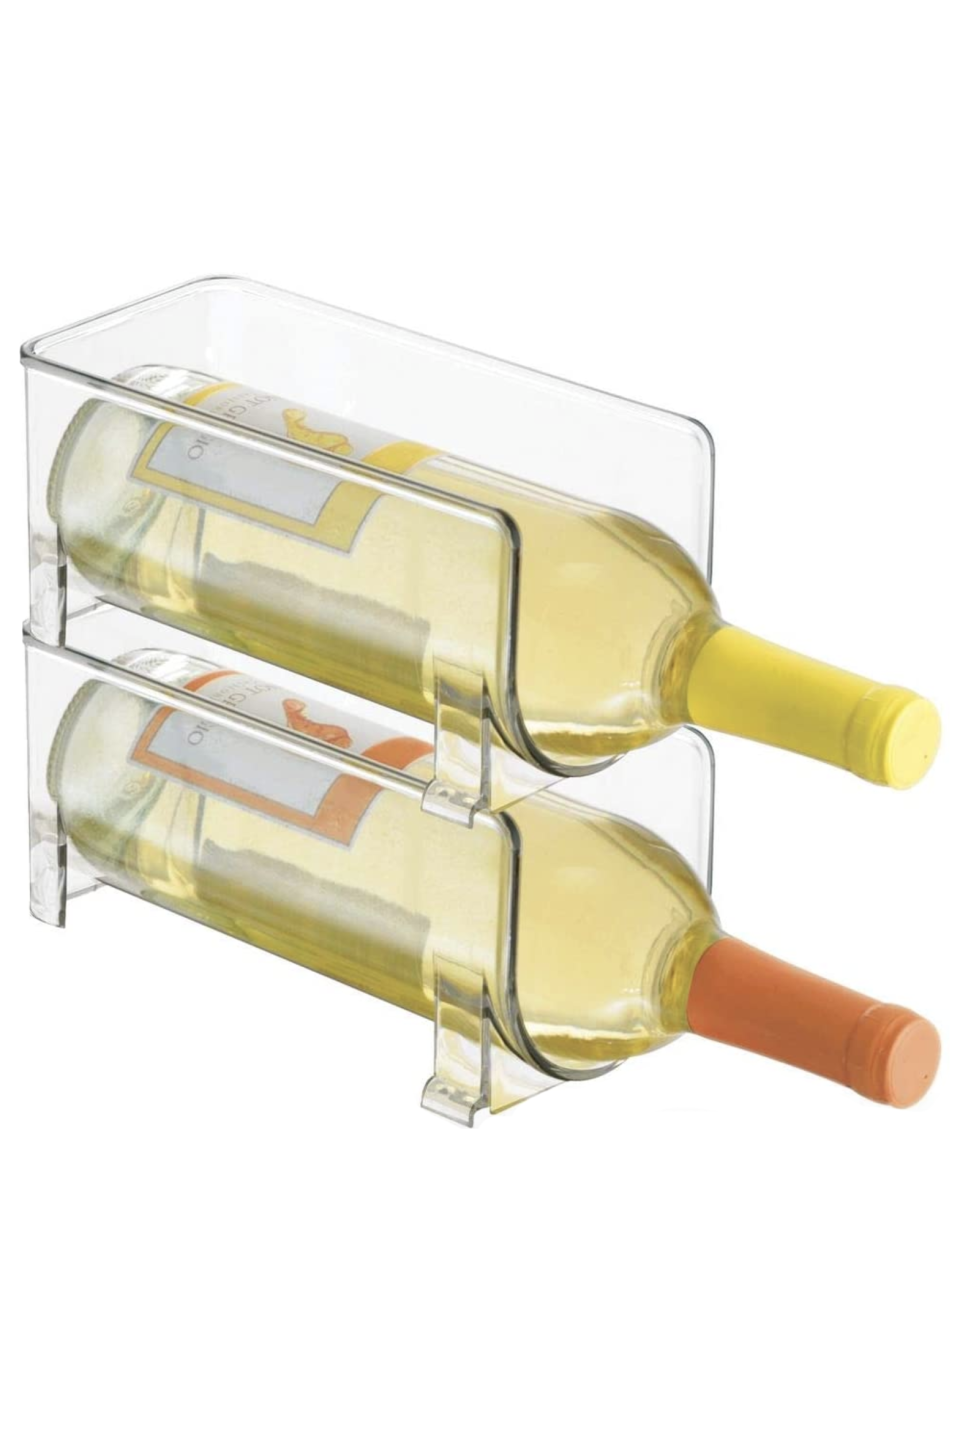 2) Fridge Wine Rack Storage